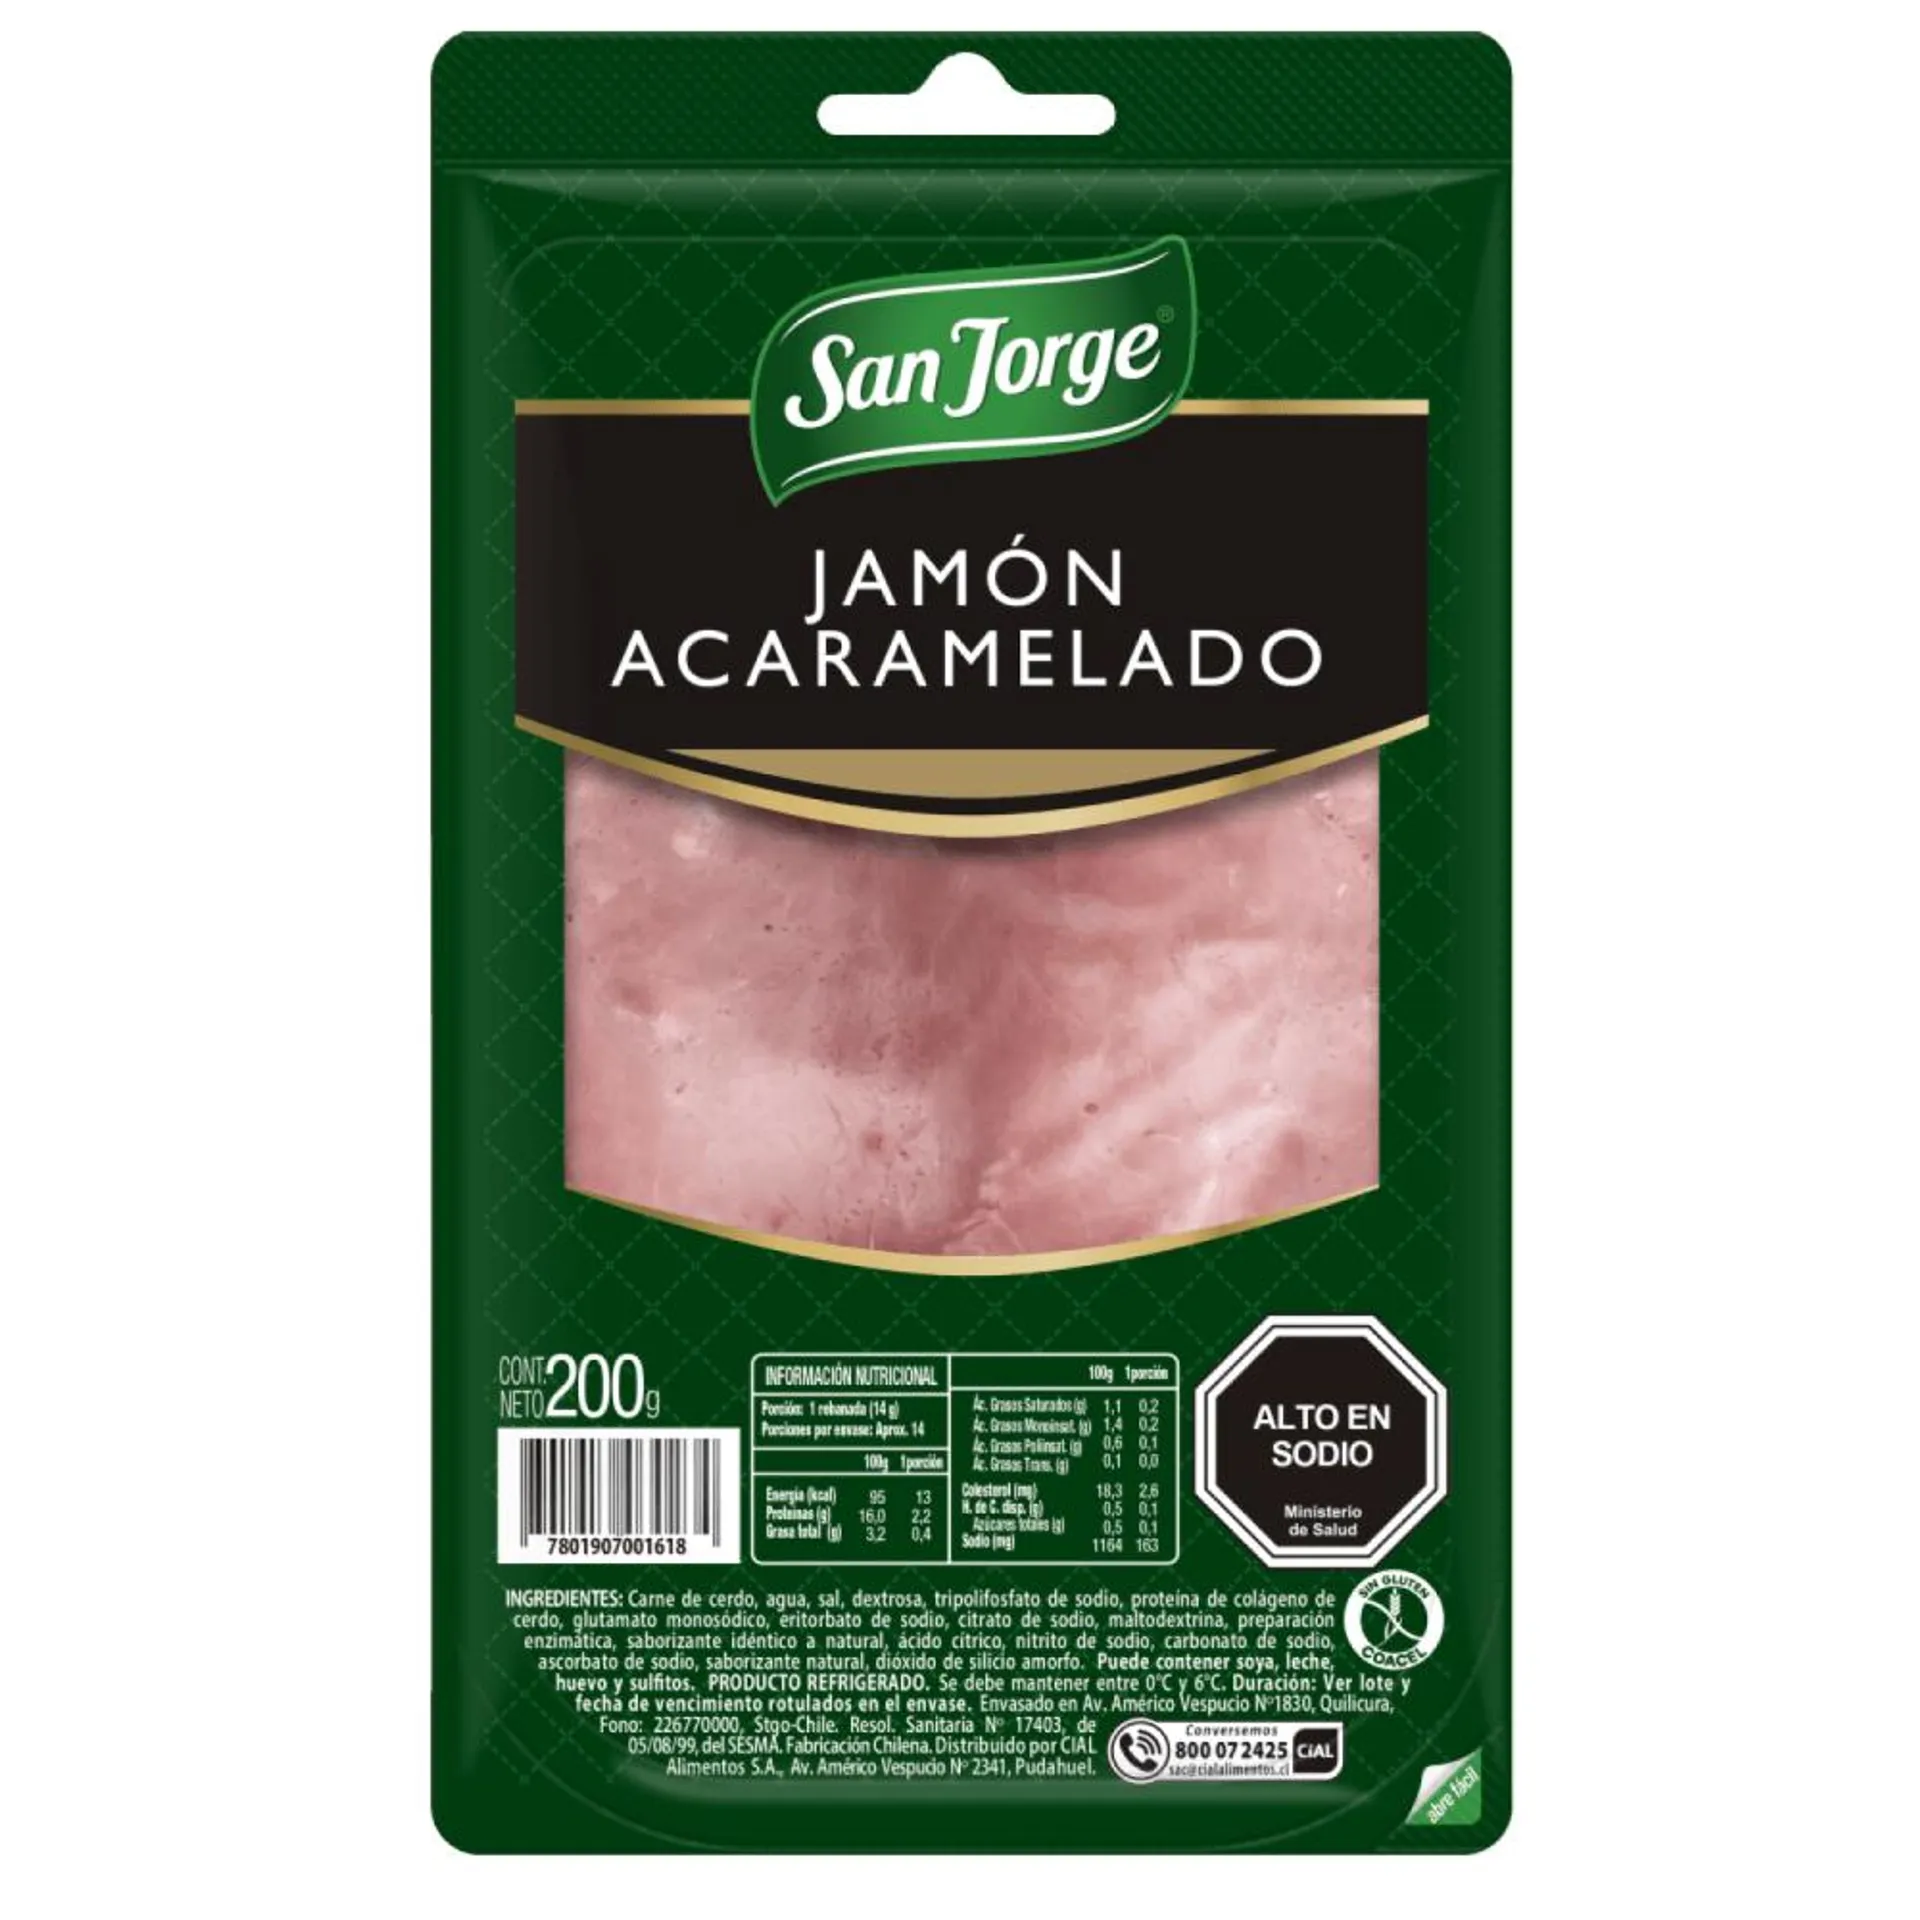 Jamón acaramelado San Jorge 200 g